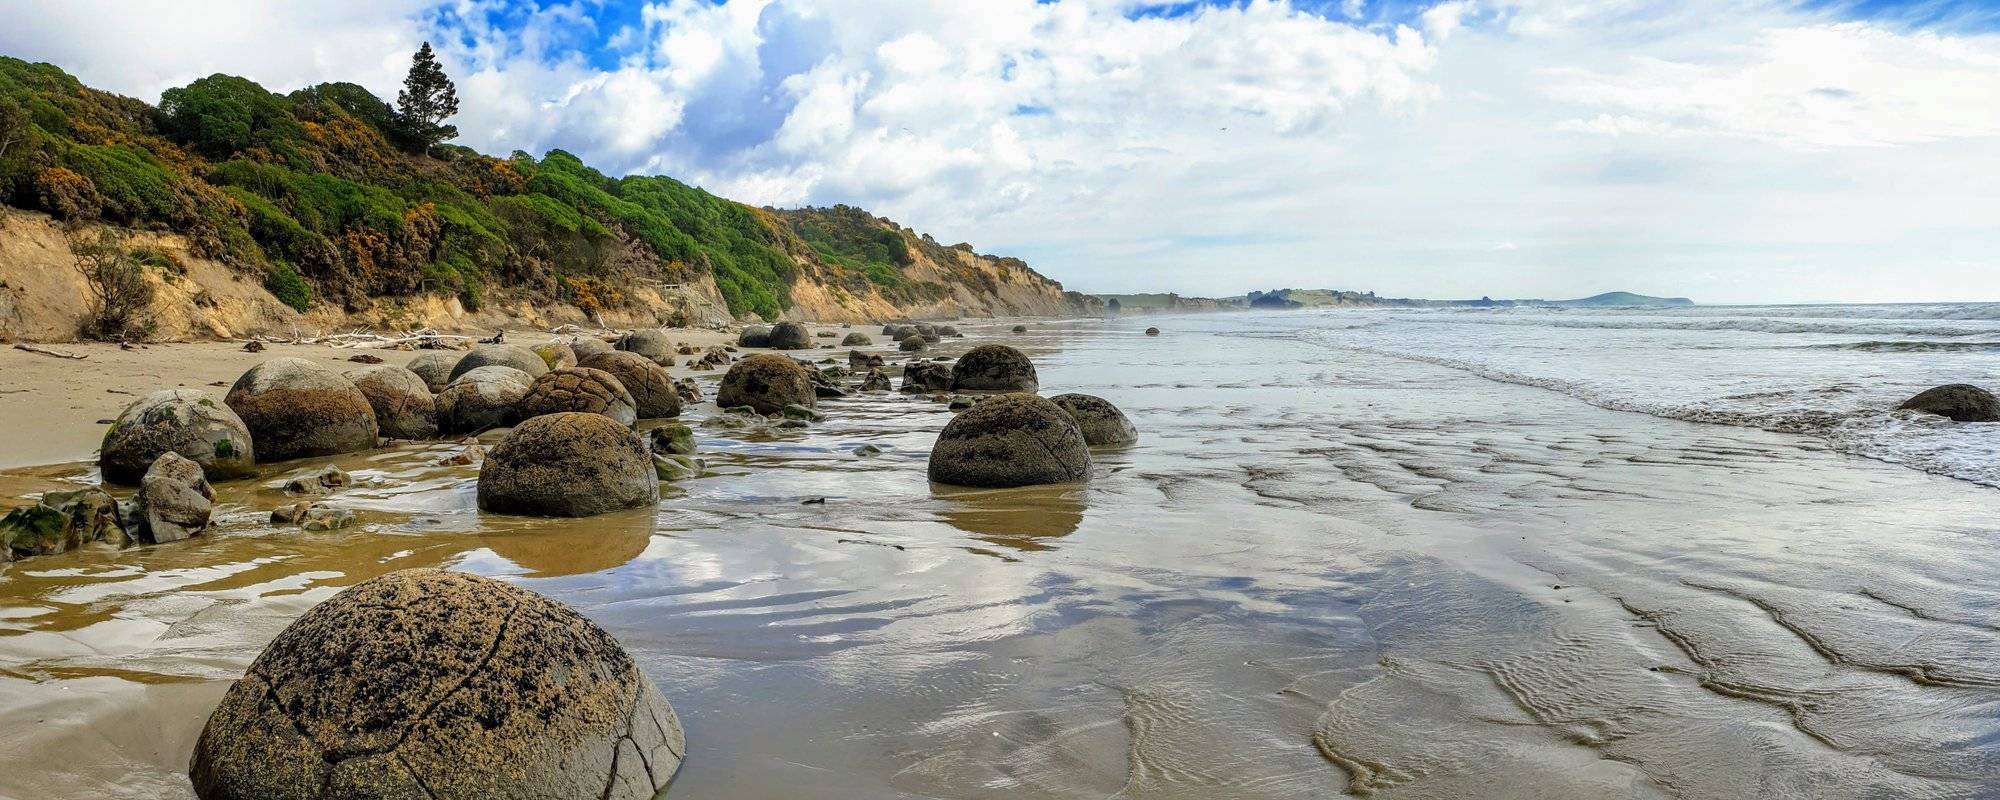 Aussie's in New Zealand: Moeraki - 60 million year-old boulders